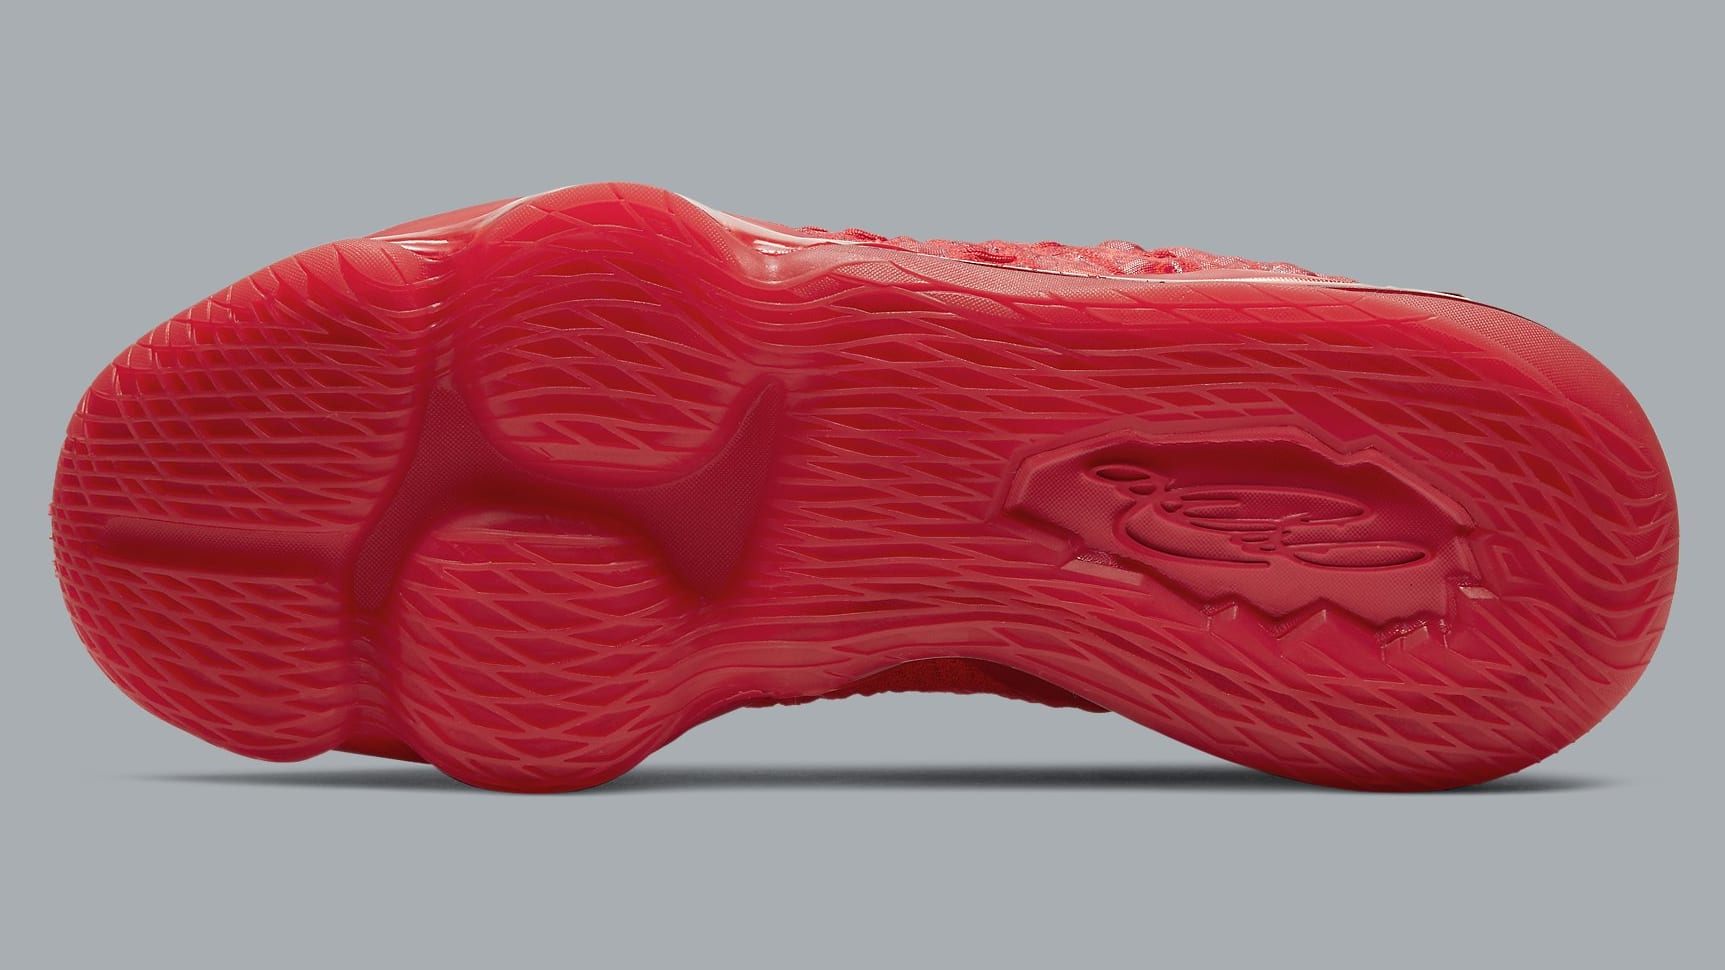 Nike LeBron 17 Red Carpet Release Date BQ3177-600 Sole